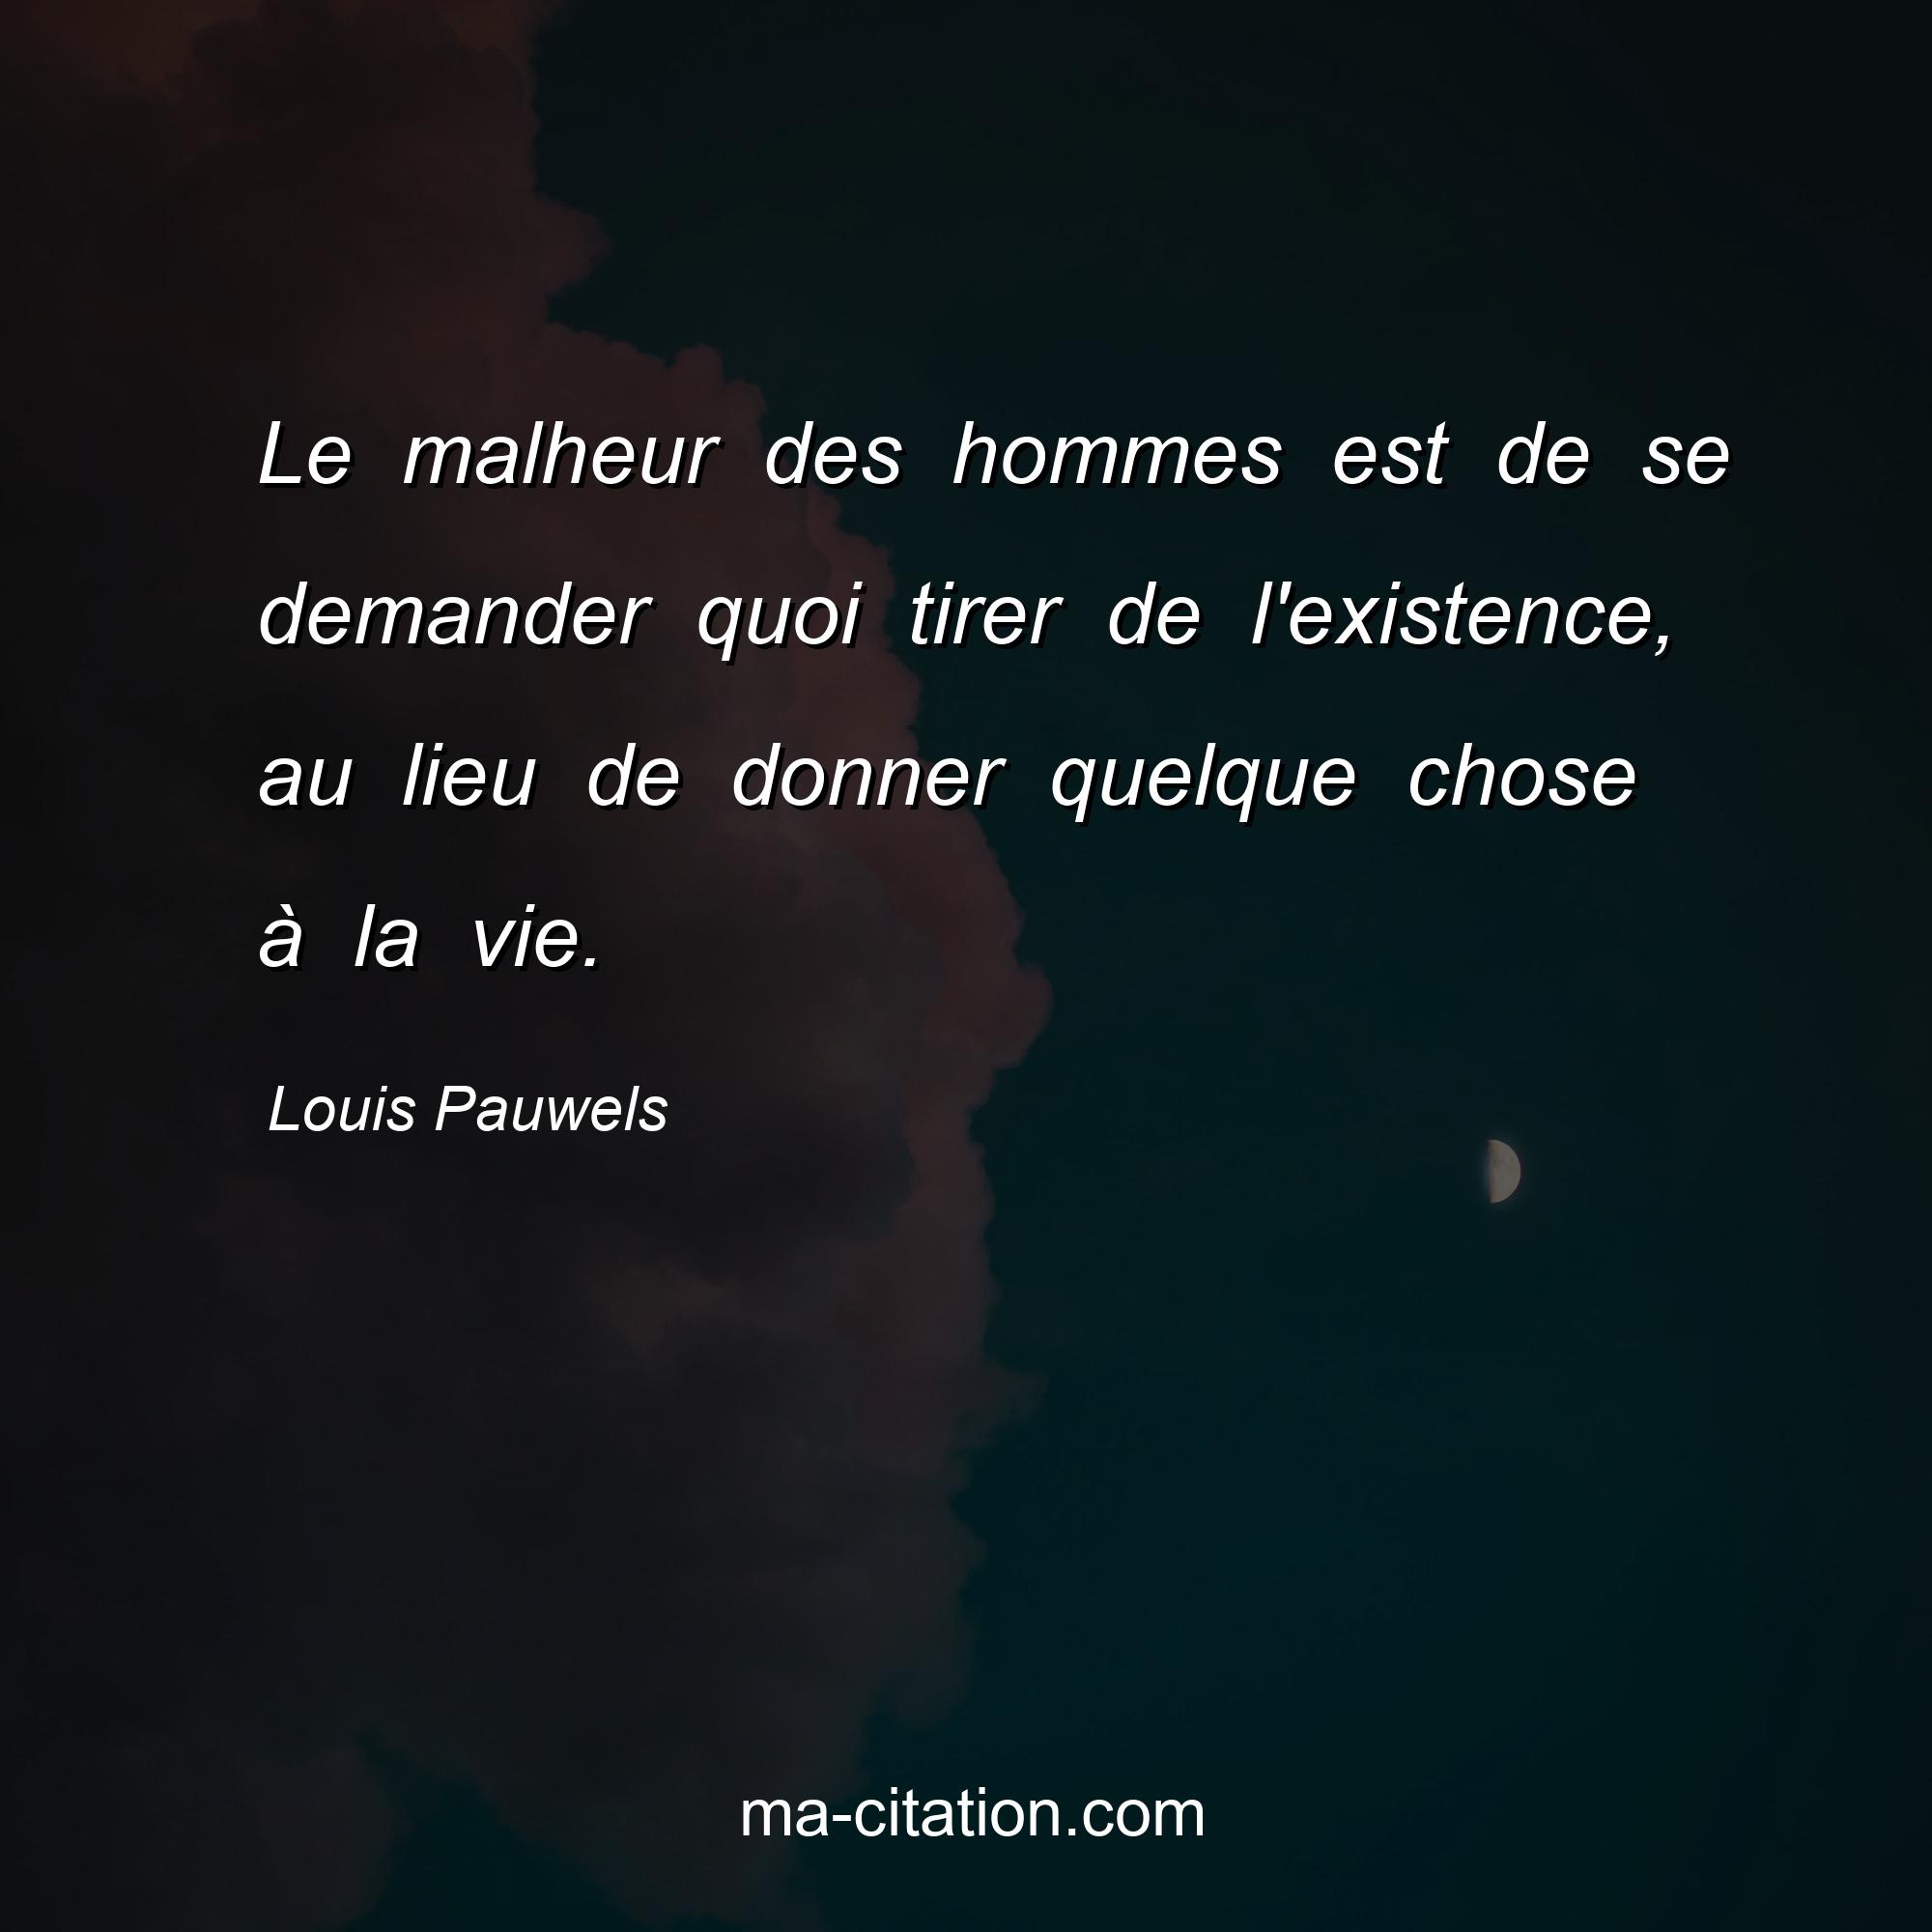 Louis Pauwels : Le malheur des hommes est de se demander quoi tirer de l'existence, au lieu de donner quelque chose à la vie.